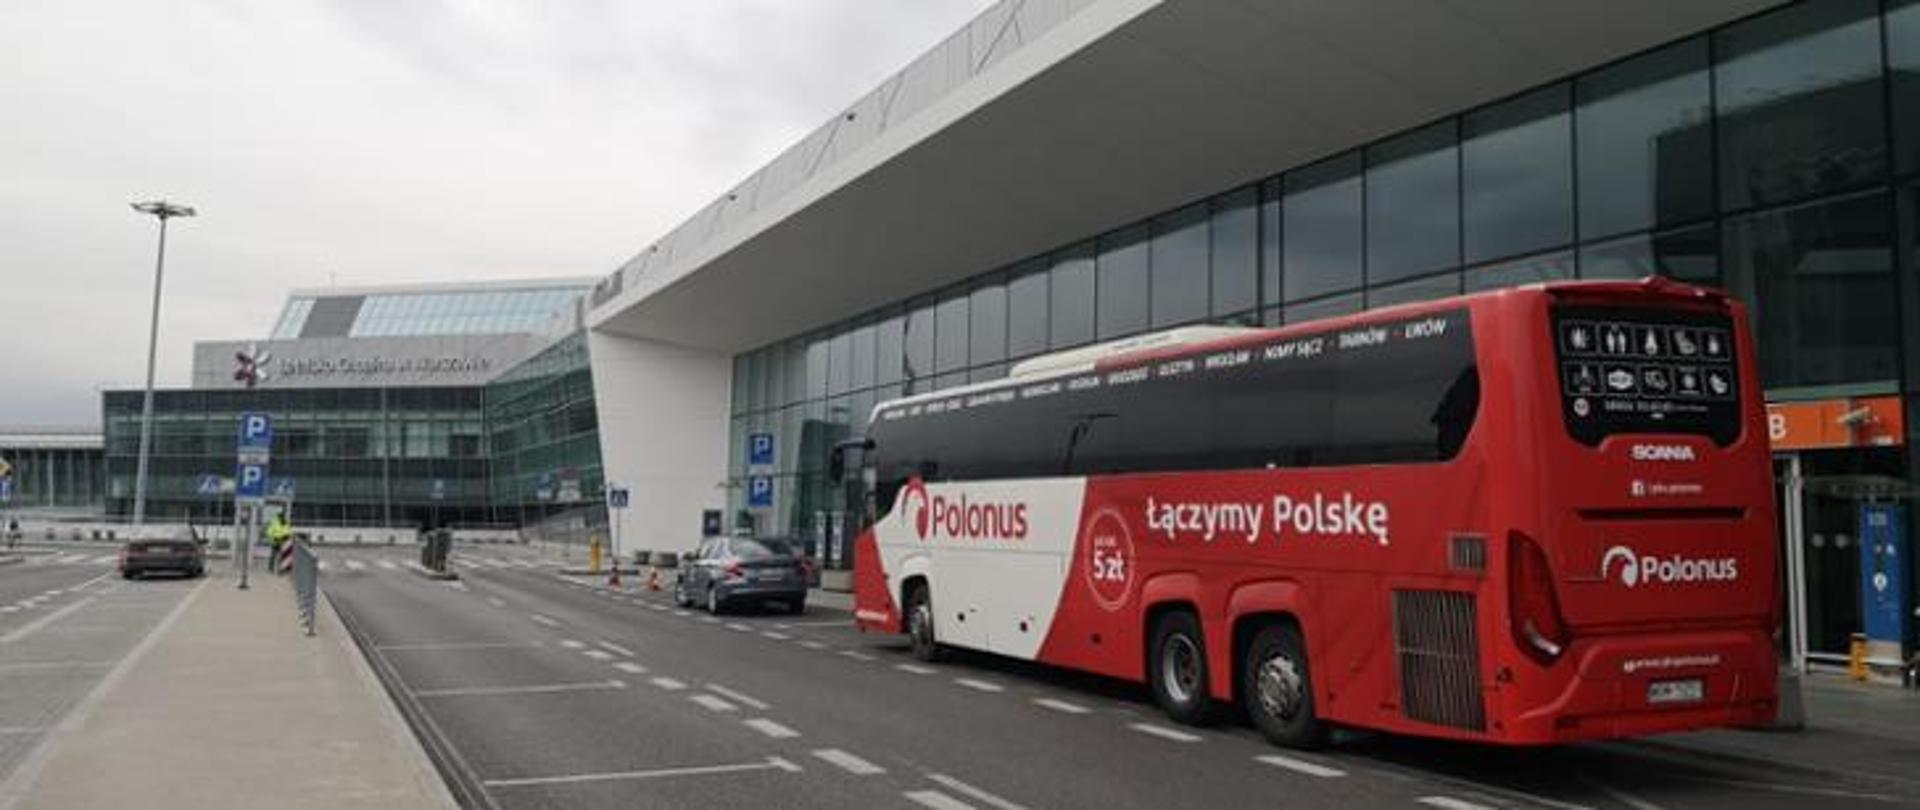 Czerwony autobus firmy Polonus zaparkowany na Lotnisku Chopina w Warszawie. 